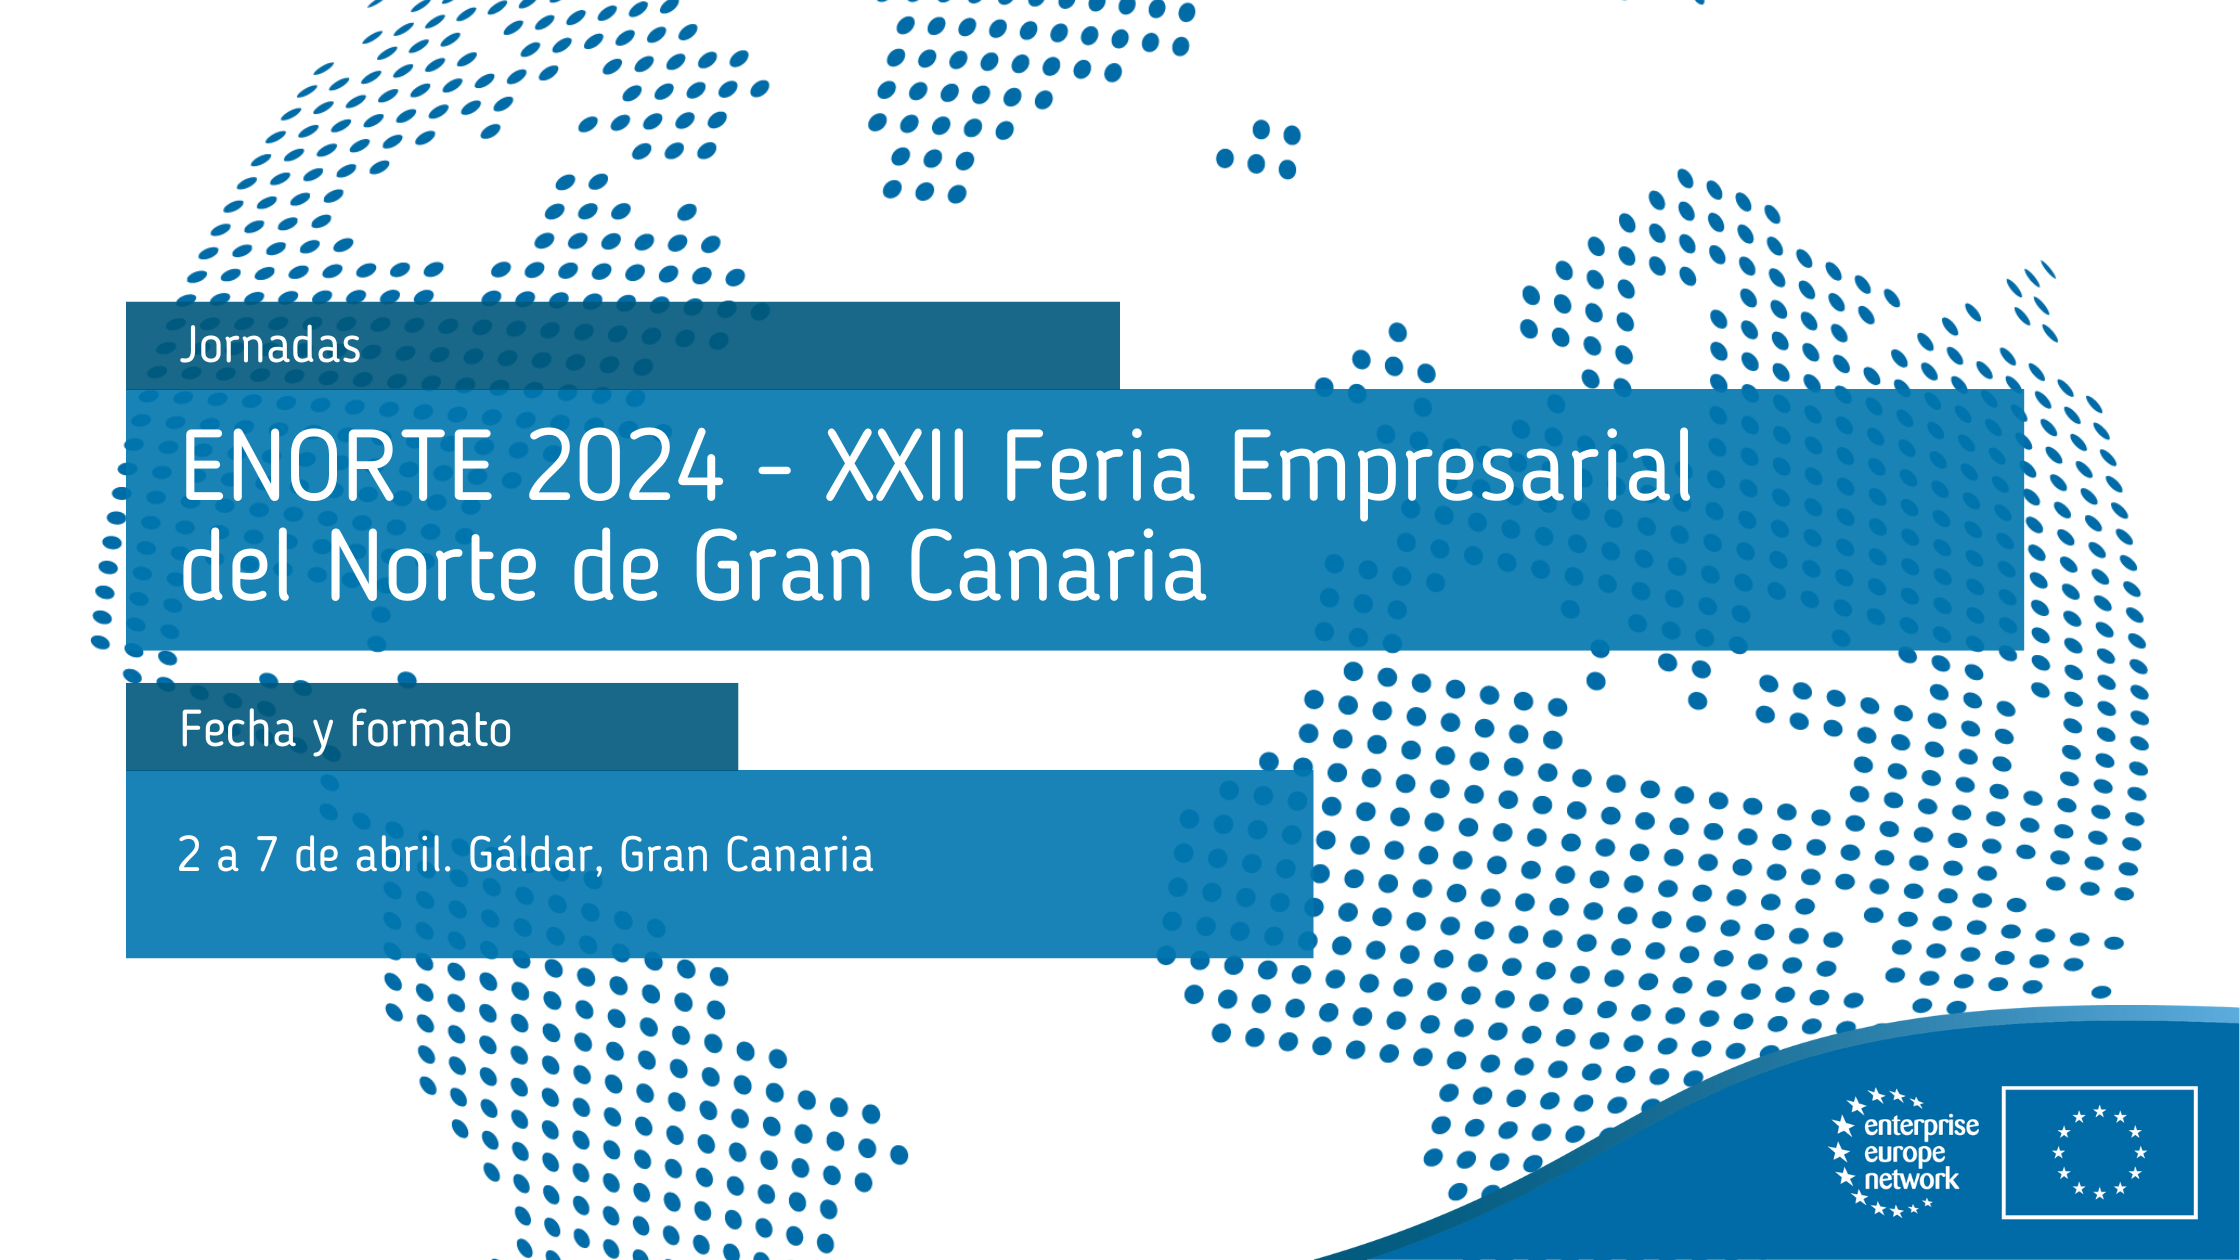 ENORTE_2024_XXII_Feria_Empresarial_del_Norte_de_Gran_Canaria